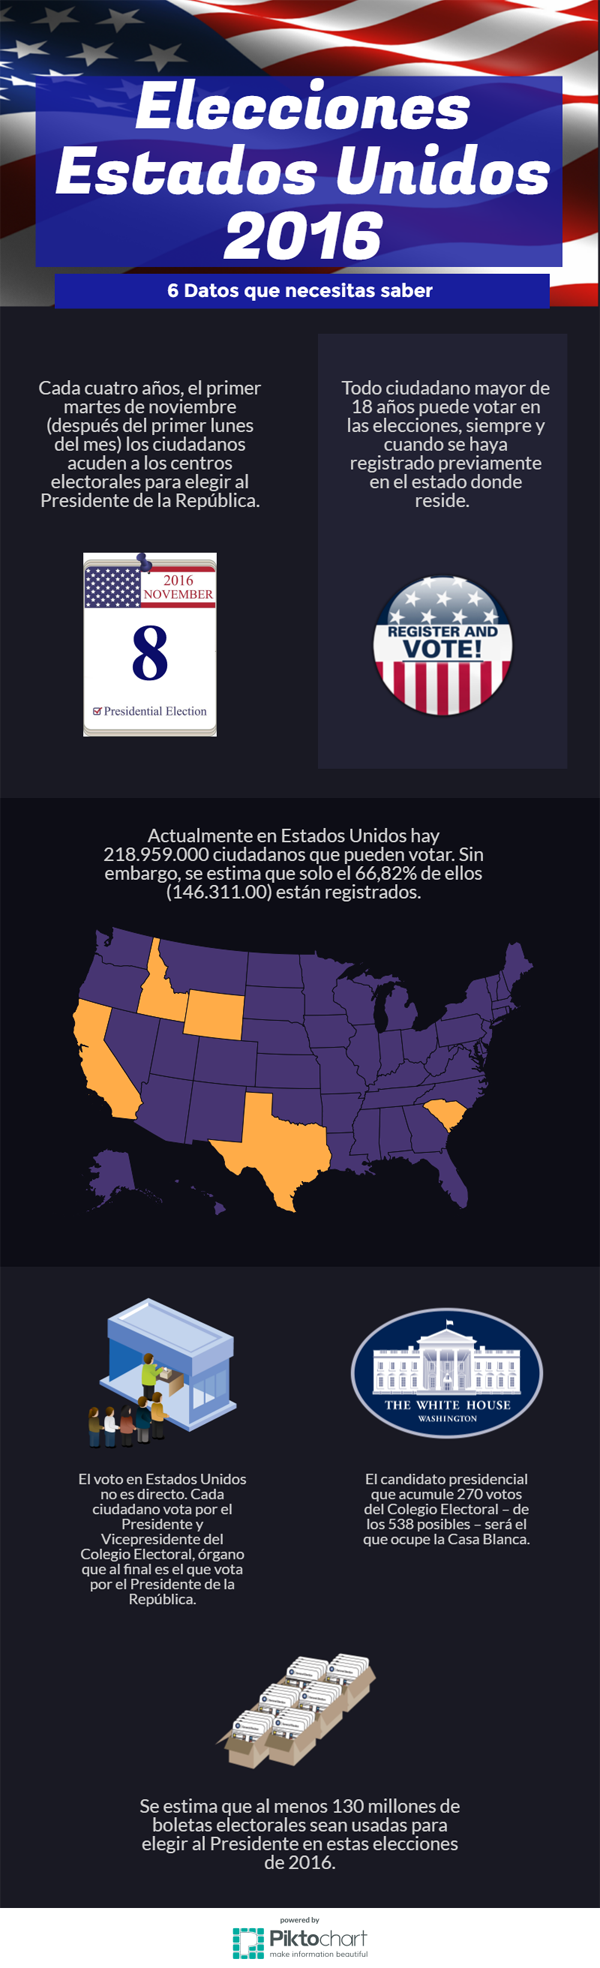 Infografia - Estados Unidos